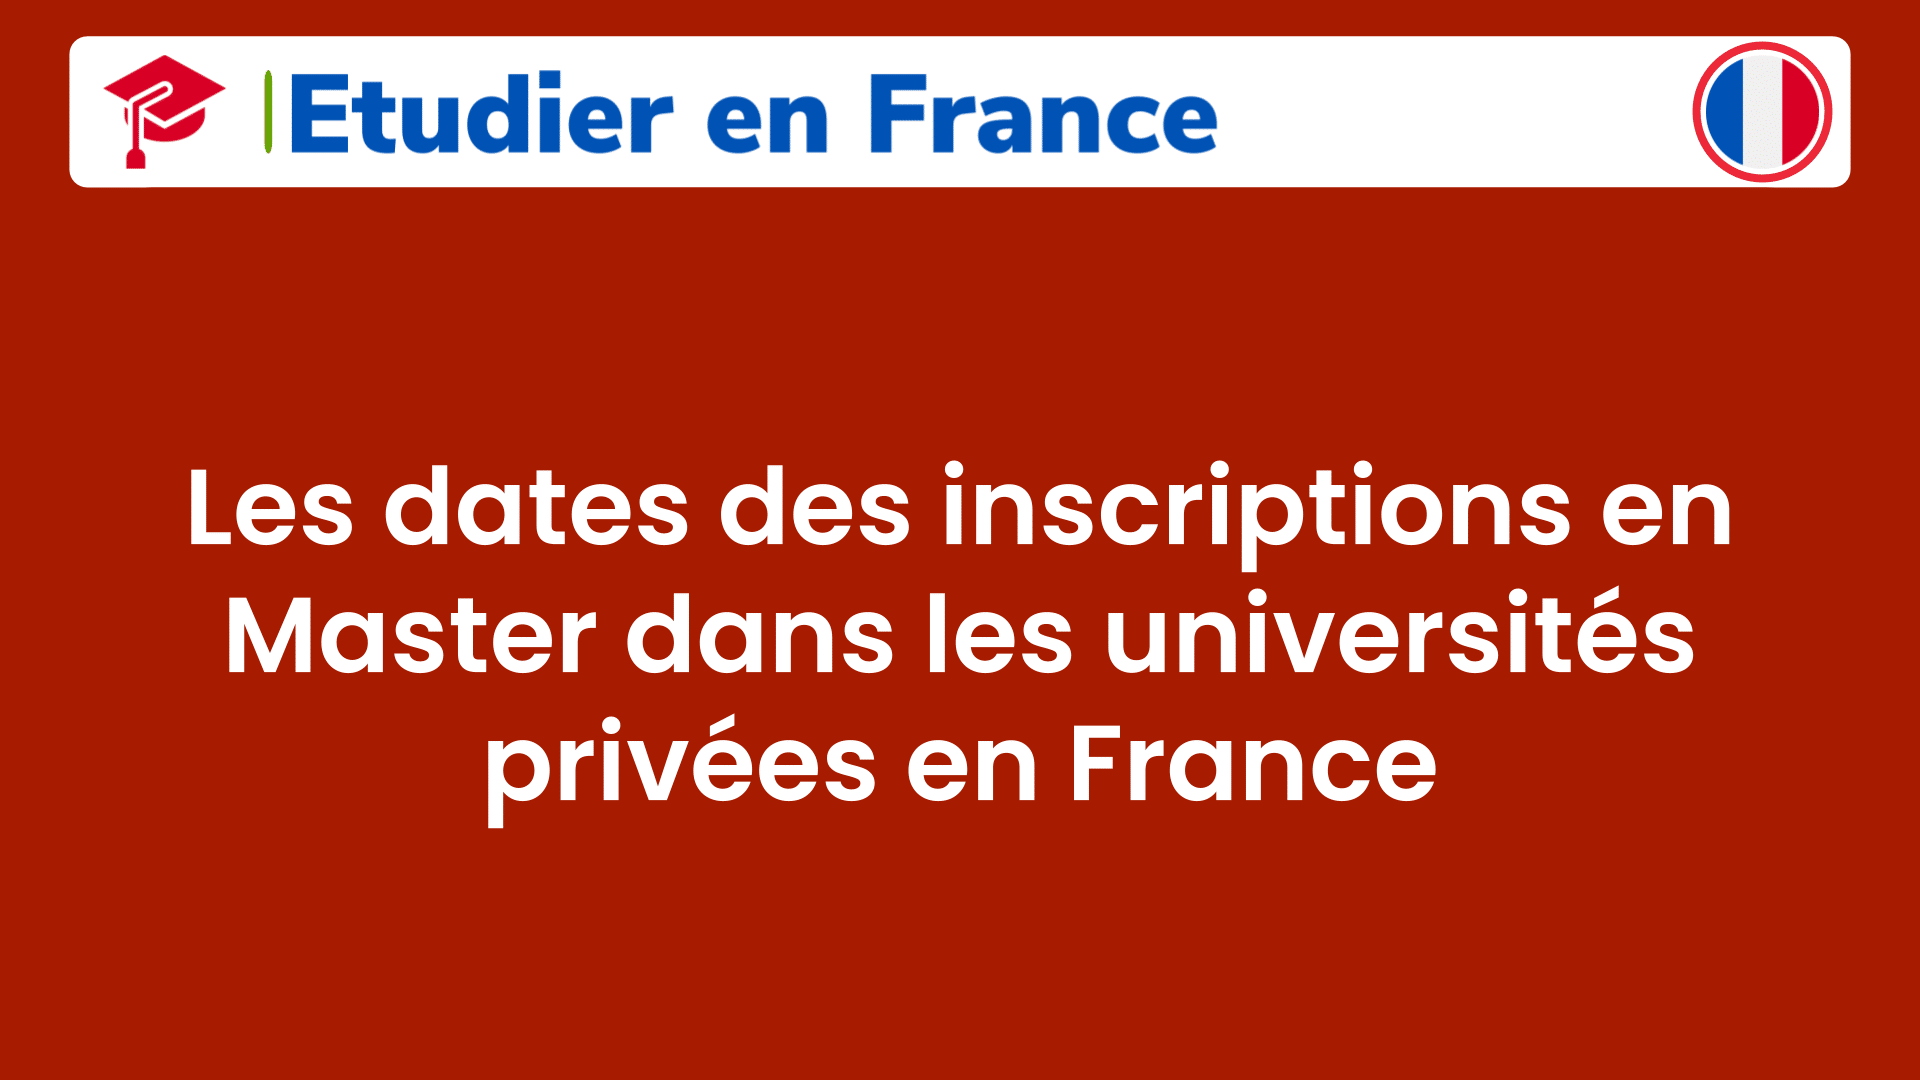 Les dates des inscriptions en Master dans les universités privées en France